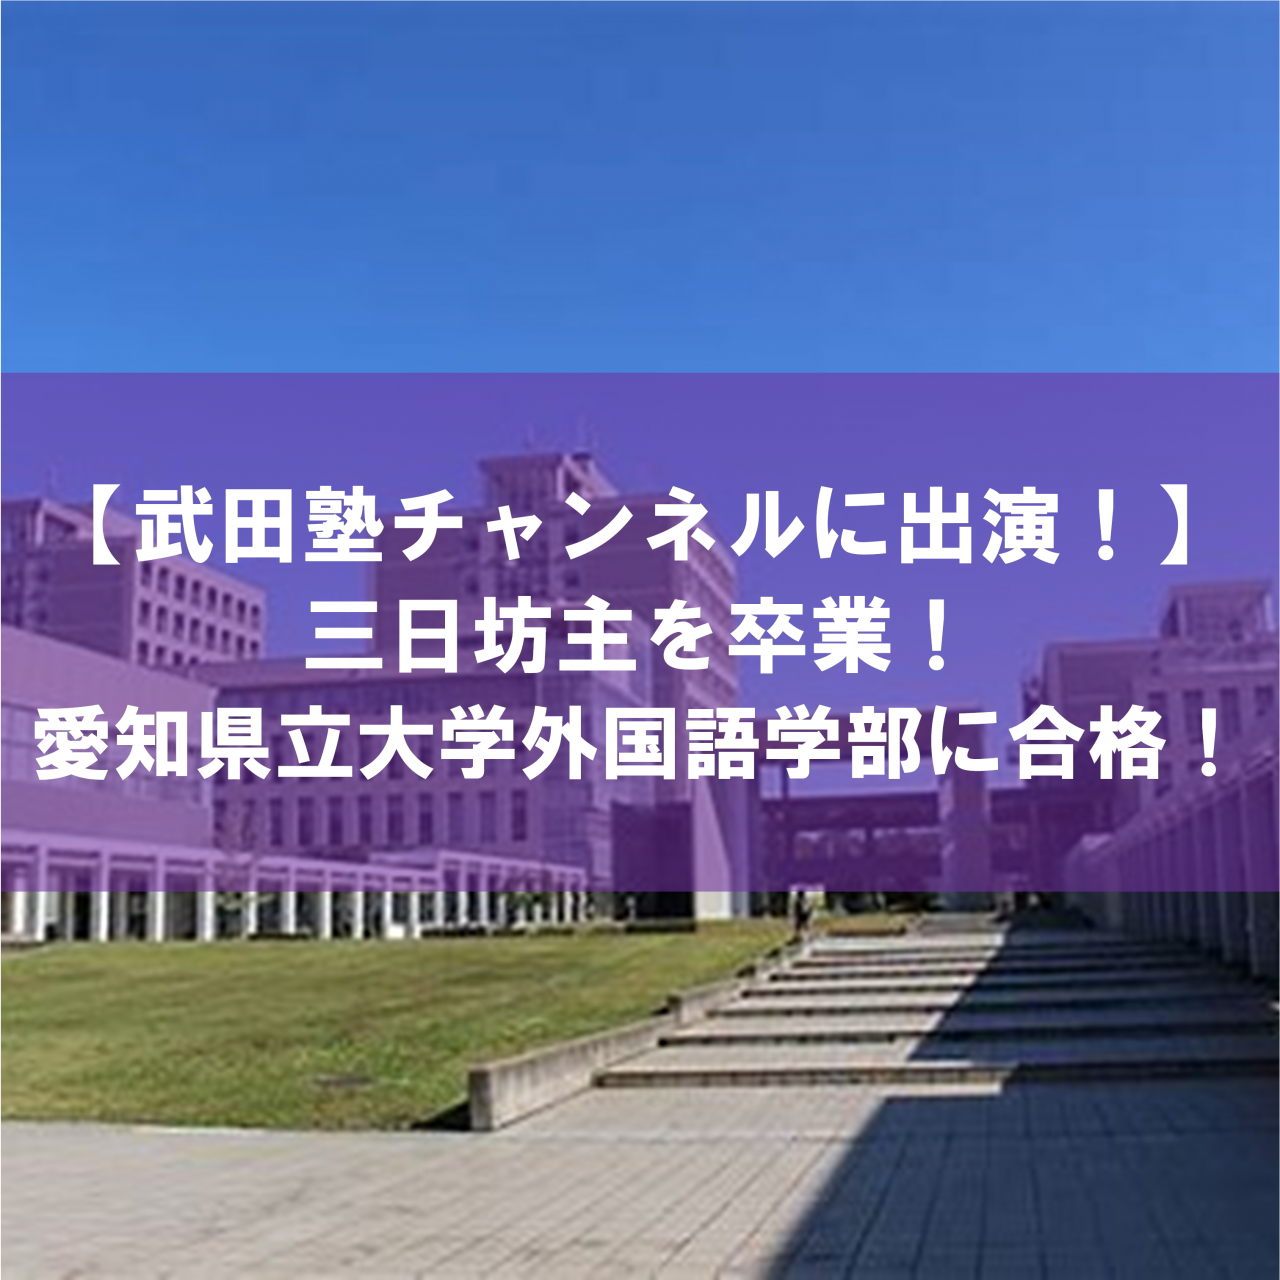 武田塾チャンネルに出演 愛知県立大学外国語学部に合格